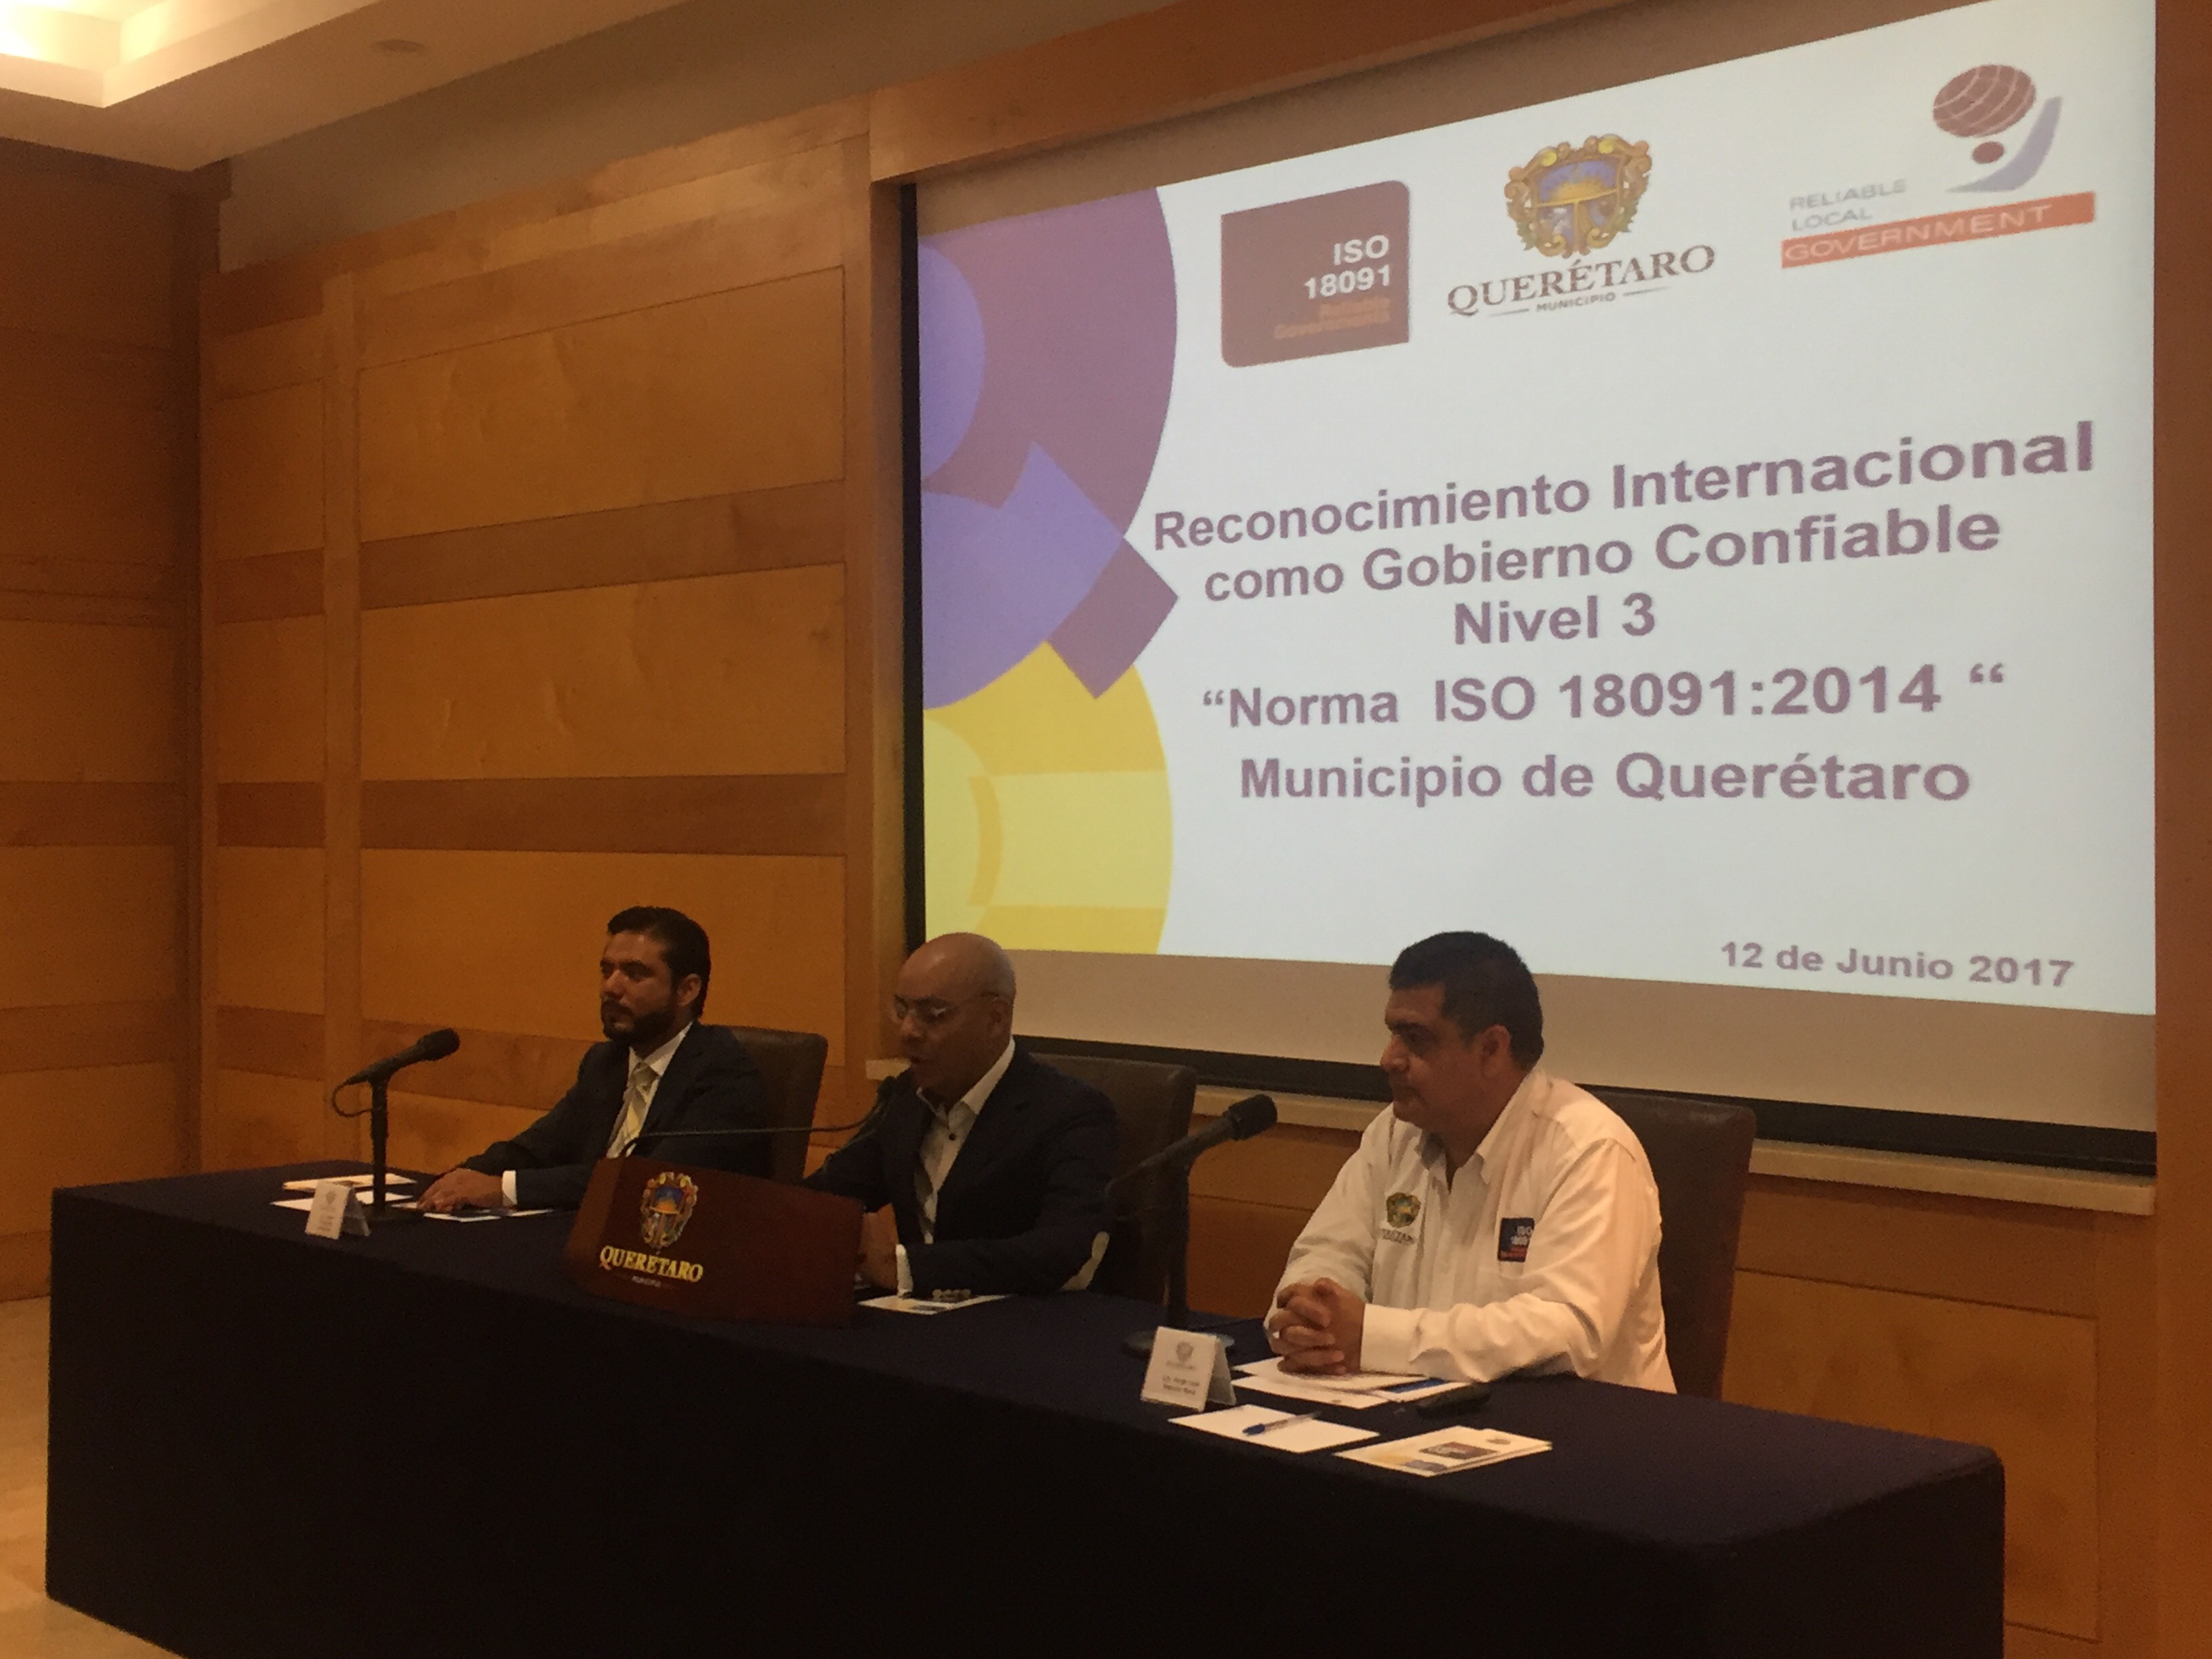  Municipio de Querétaro quiere que lo reconozcan a nivel internacional por buen gobierno